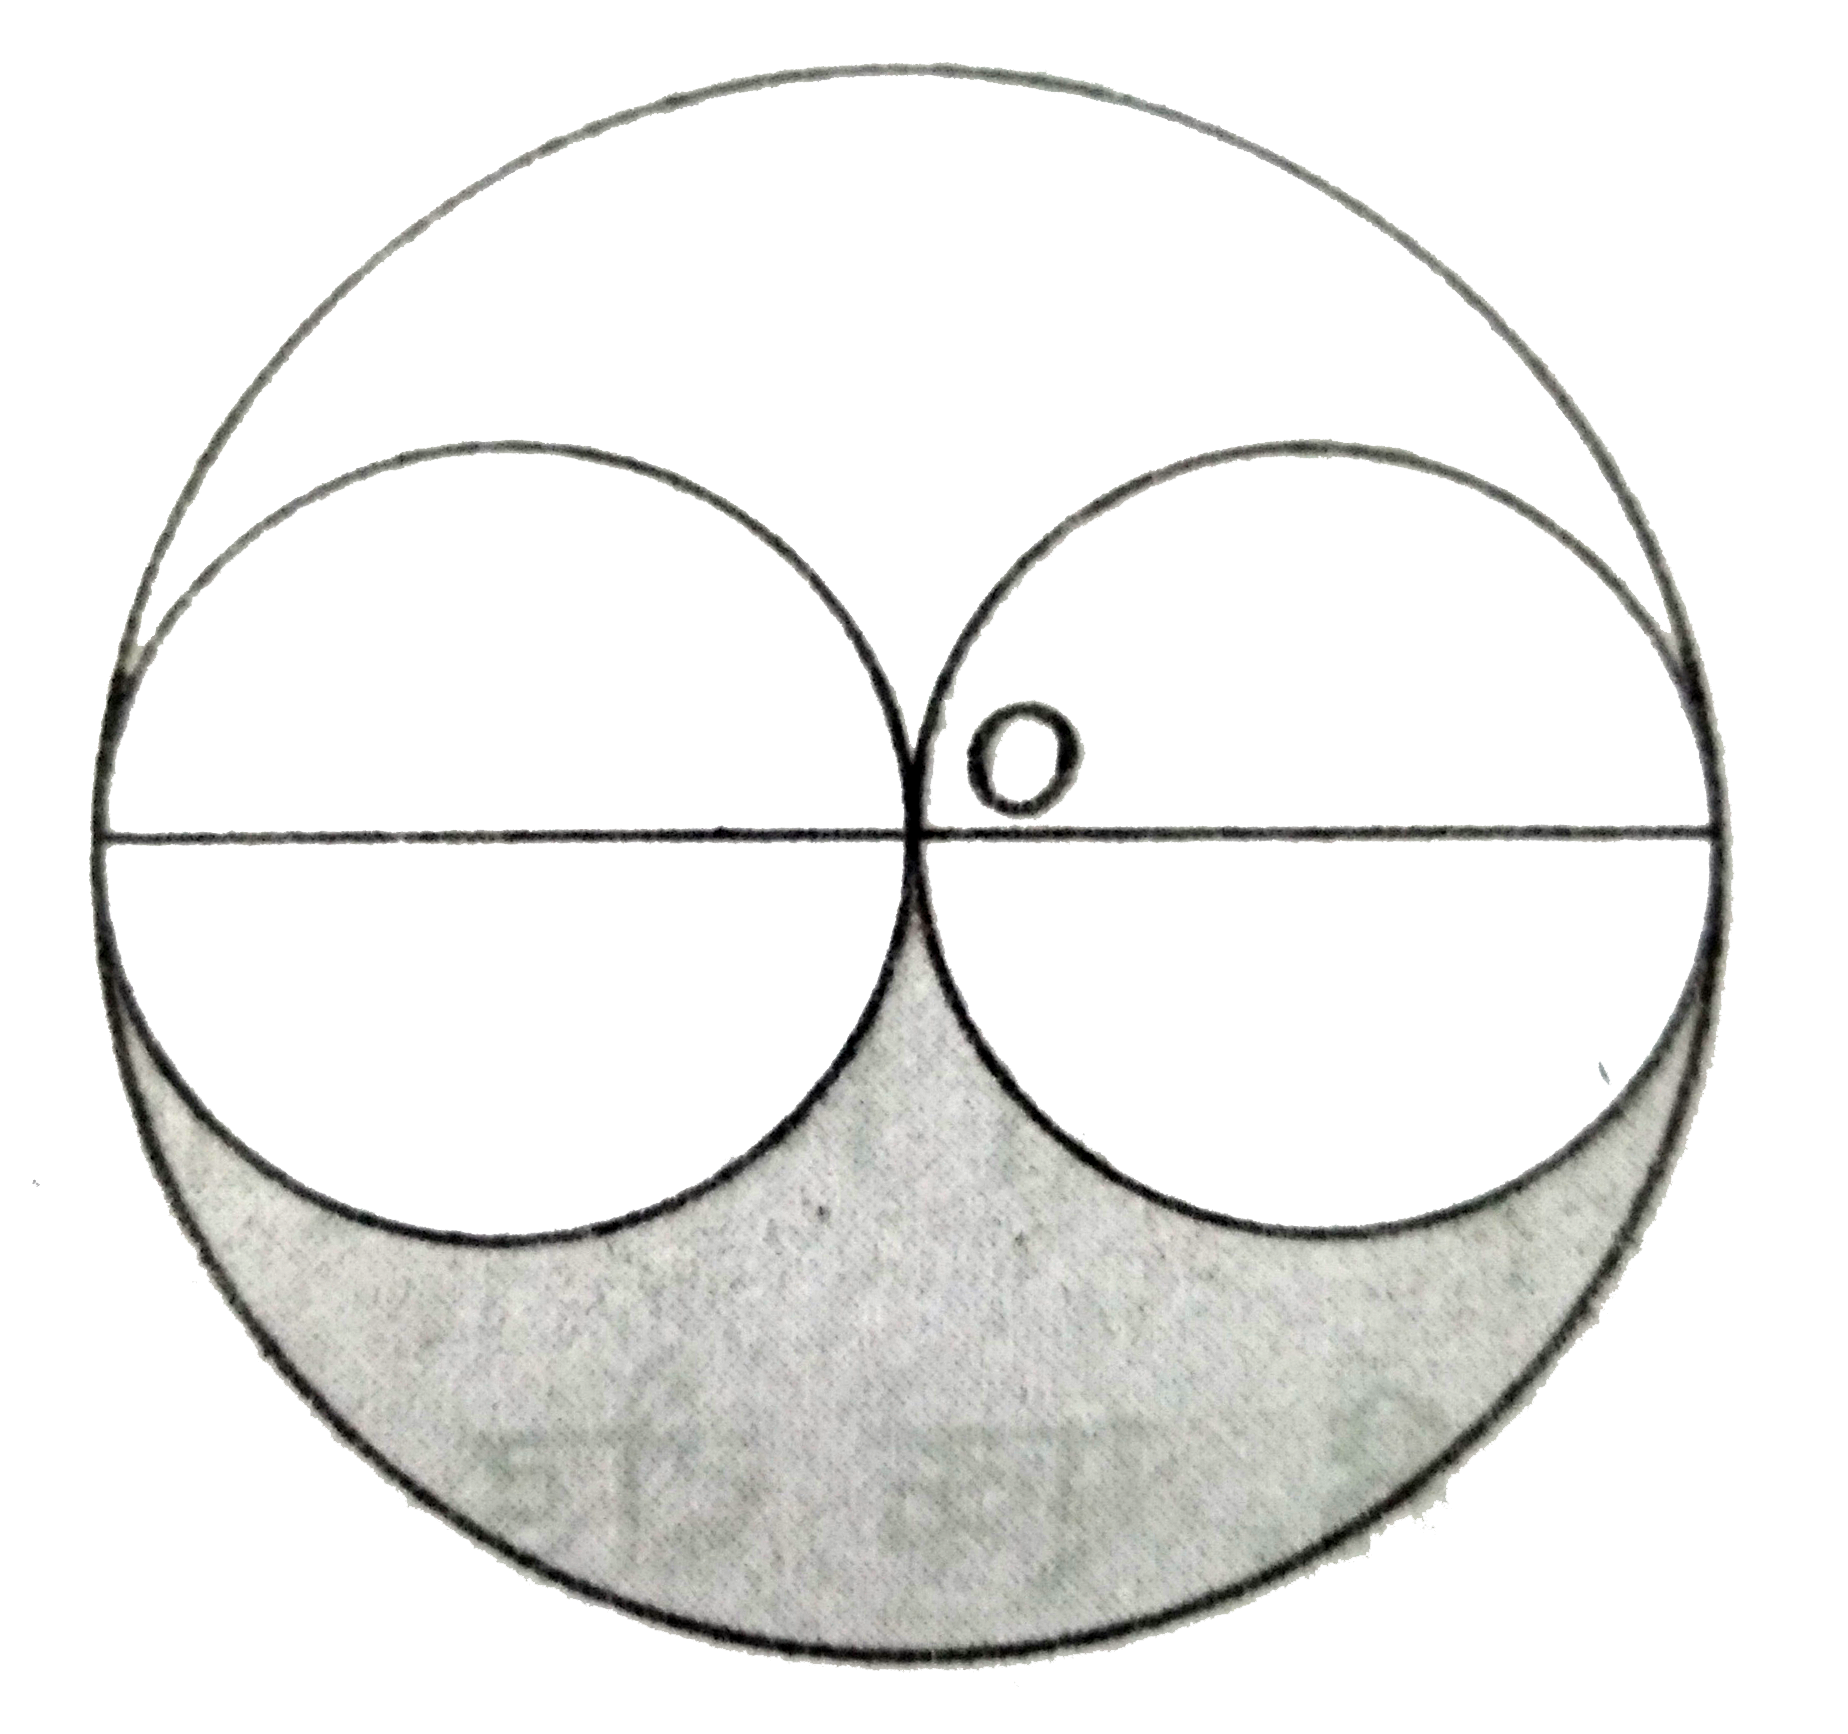 दिये चित्र में दो  छोटे  वृत्त एक - दूसरे  को  बड़े वृत्त के केंद्र पर बाह्यतः  स्पर्श करते है  और ये  छोटे  वृत्त , बड़े वृत्त द्वारा अन्तः स्पर्श  होते है । बड़े  वृत्त  की त्रिज्या  4  सेमी है । छायांकित  भाग  का क्षेत्रफल  ज्ञात कीजिए ।